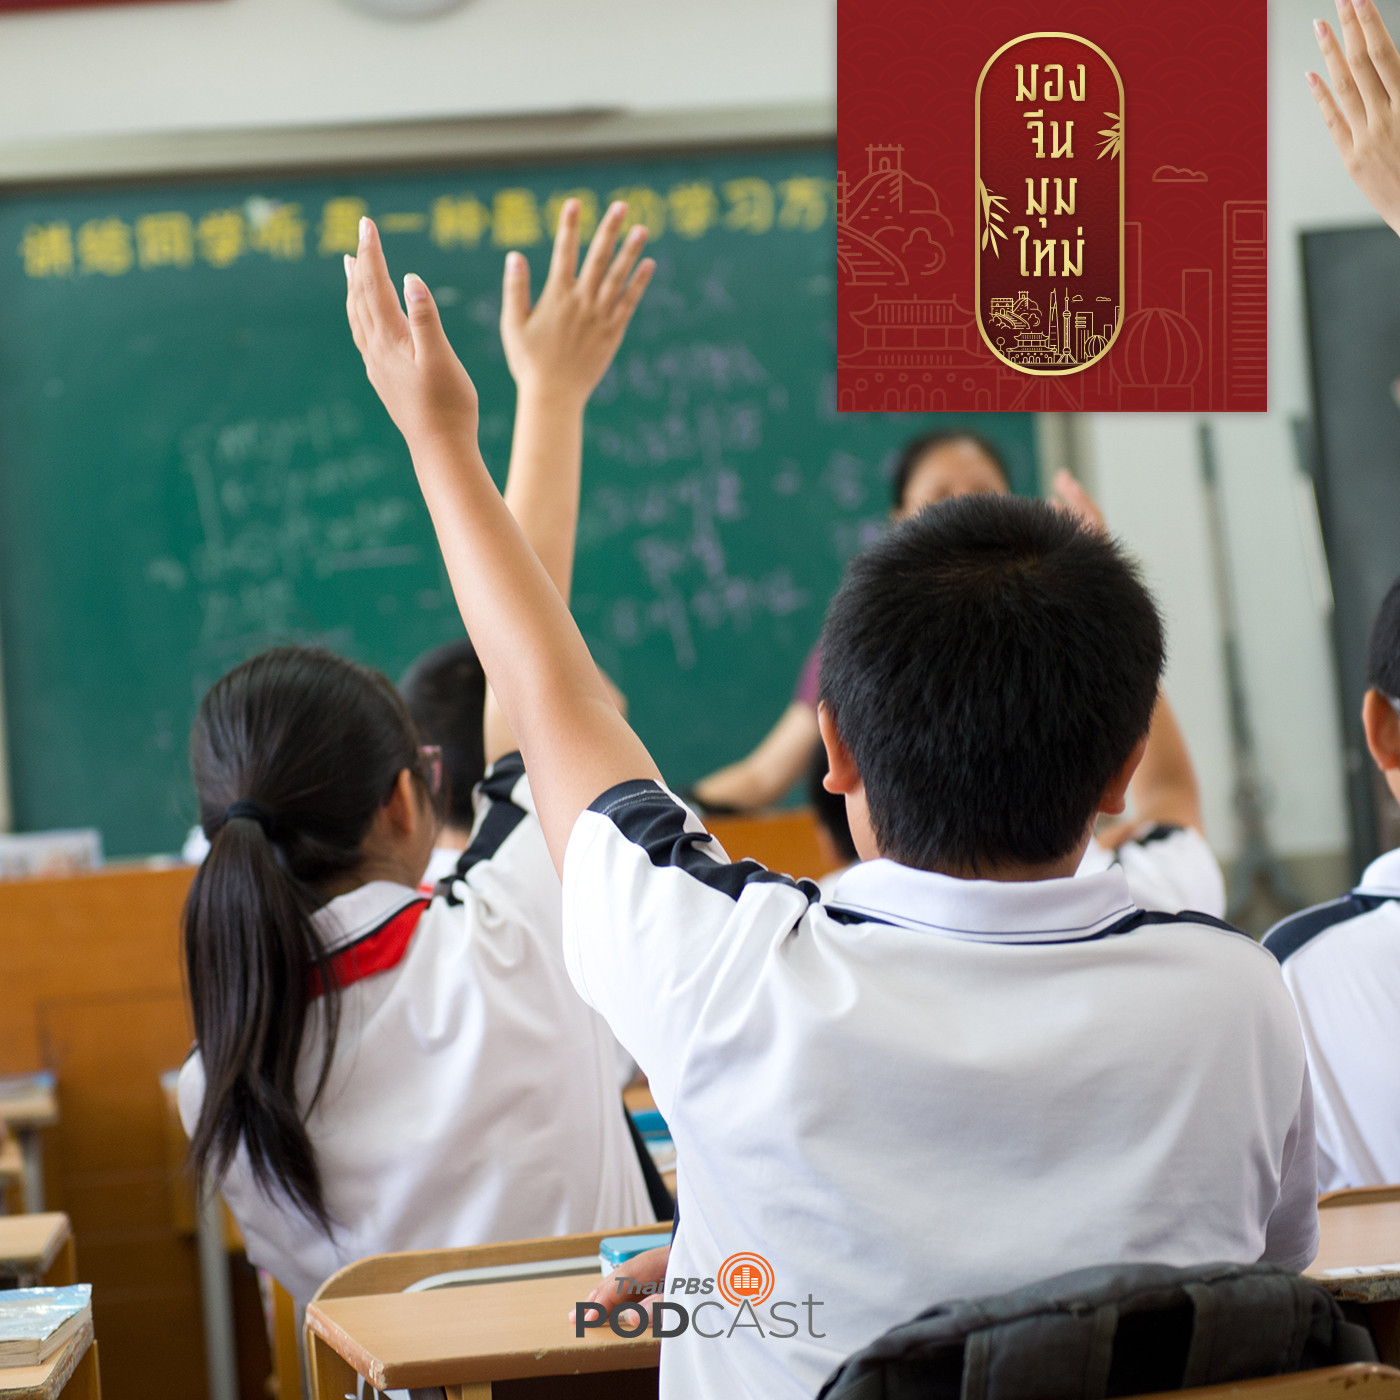 มองจีนมุมใหม่ EP. 19: จีนลงดาบธุรกิจกวดวิชาเอกชน หวังปฏิรูปการศึกษา ลดความ